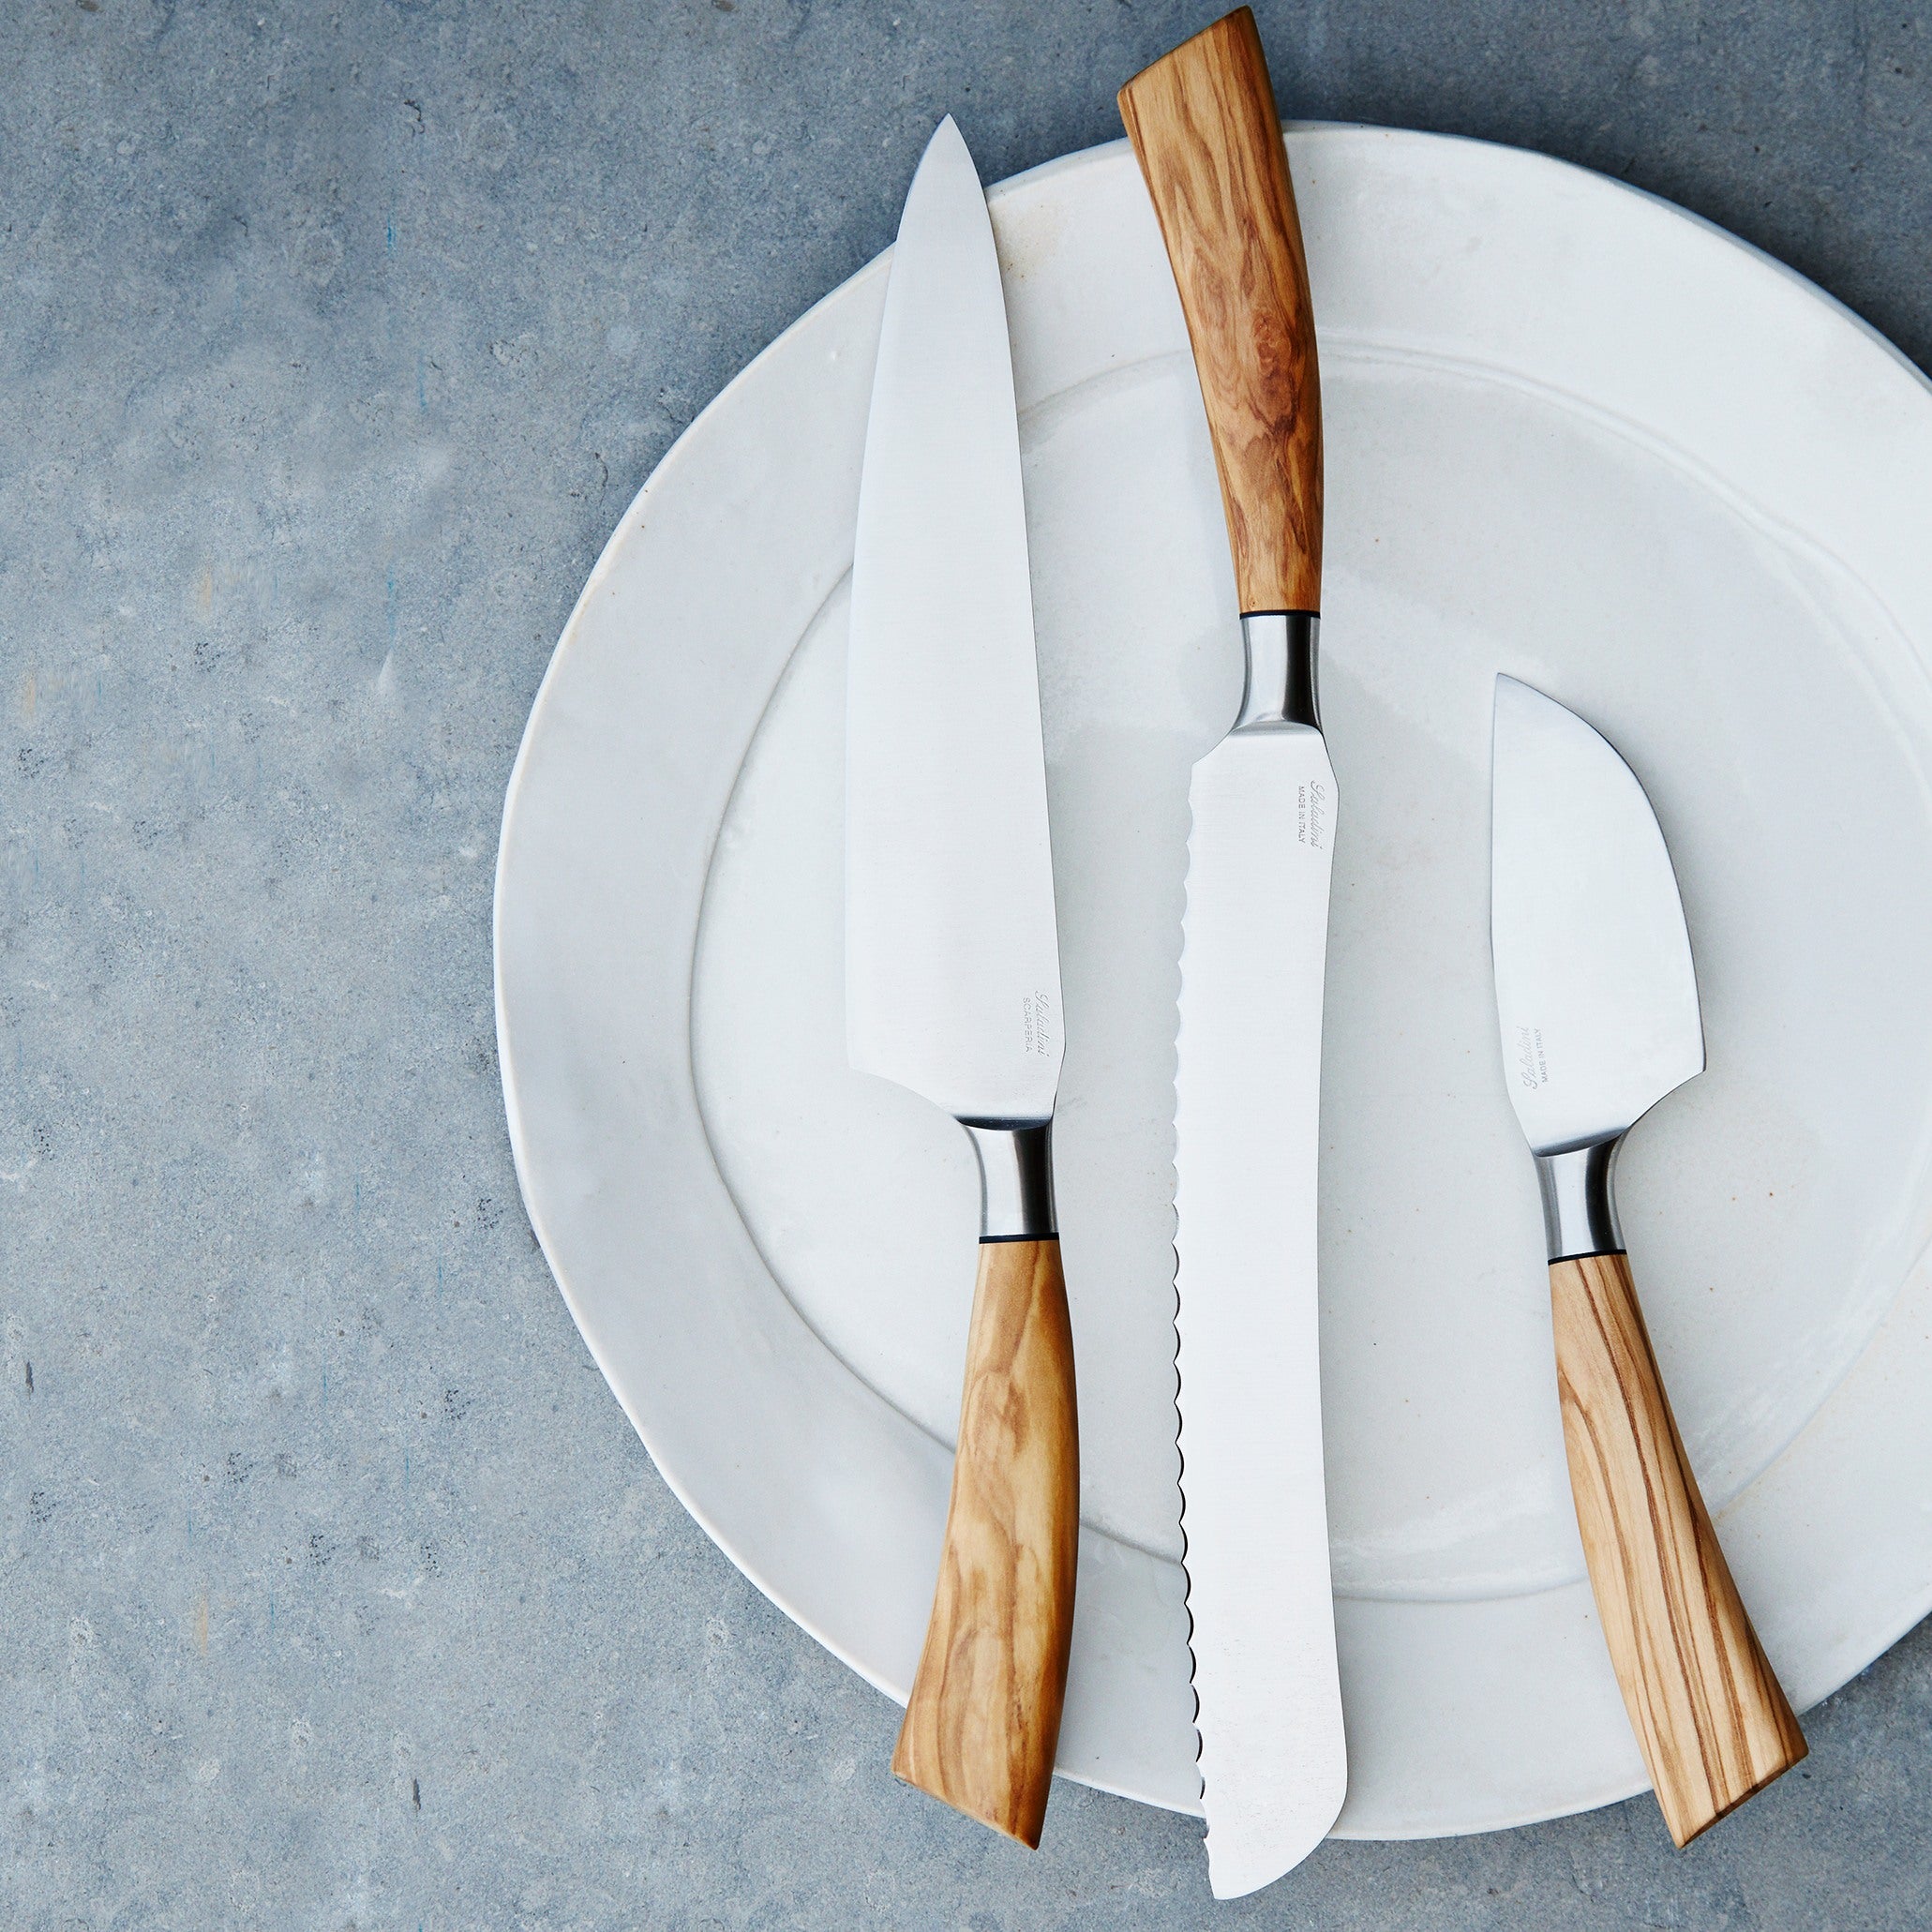 Saladini håndlavede knive med skaft af oliventræ, O&CO gourmet gave